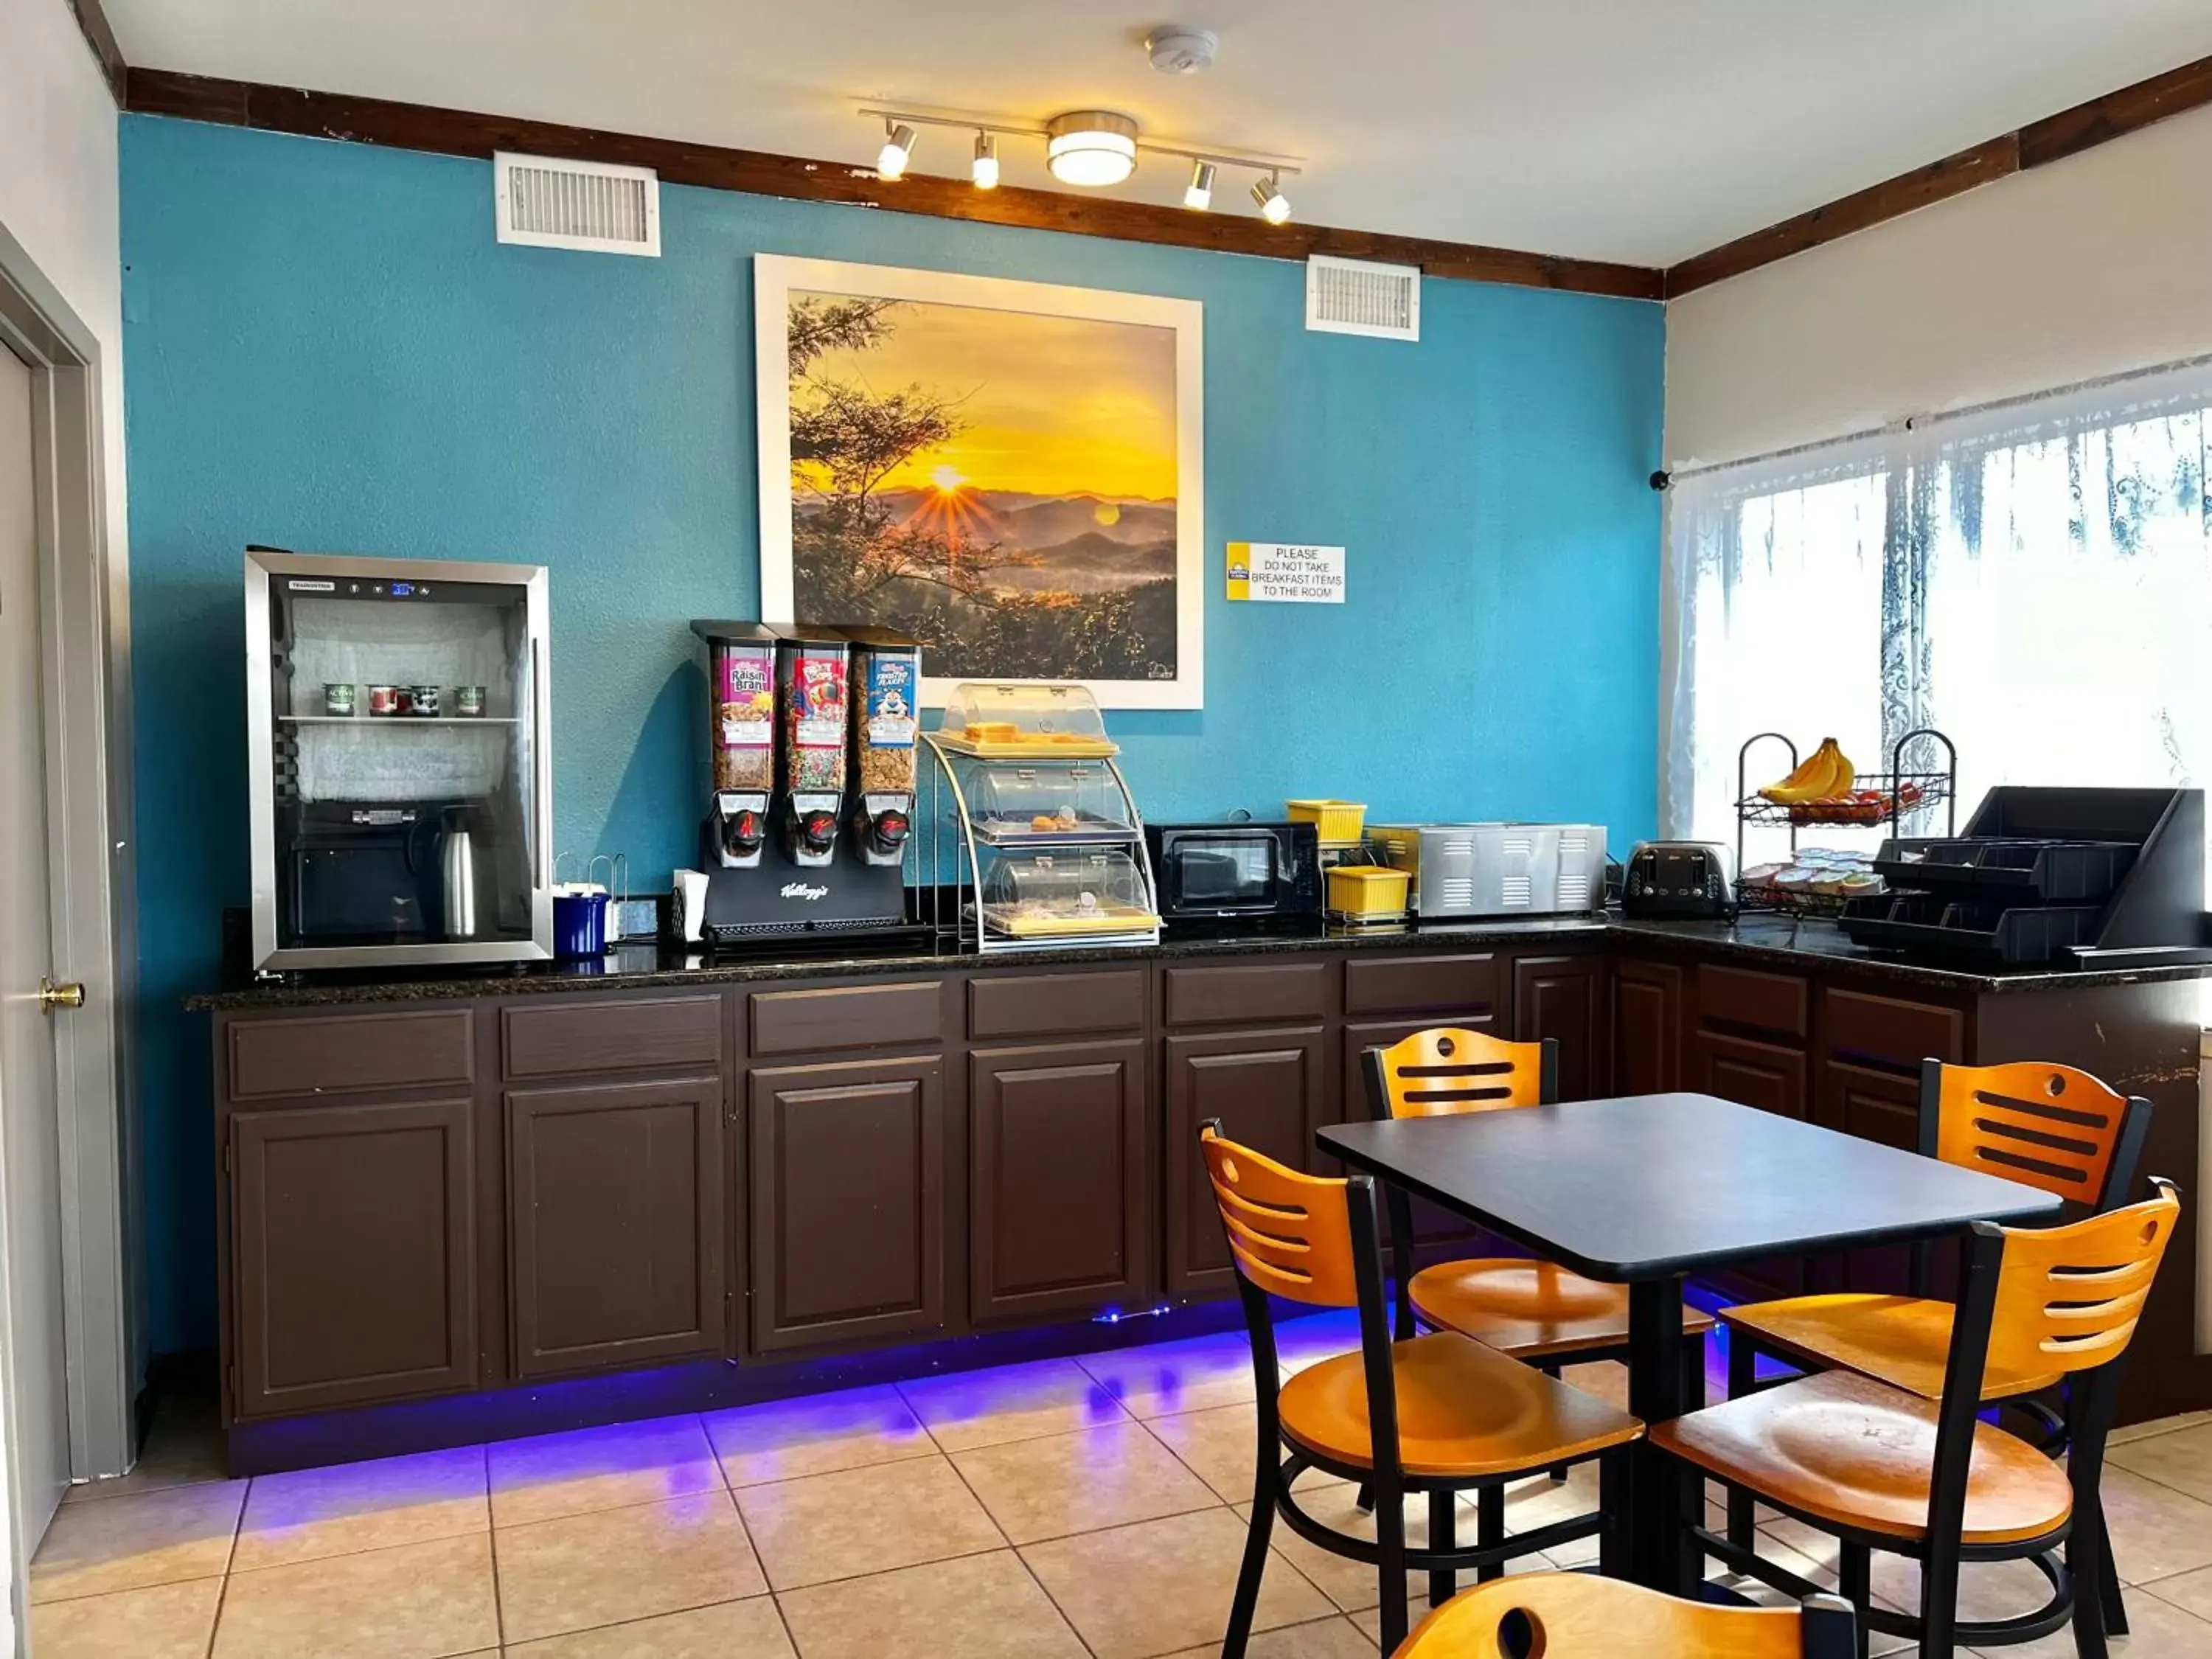 Breakfast, Restaurant/Places to Eat in Days Inn by Wyndham Suites Fredericksburg